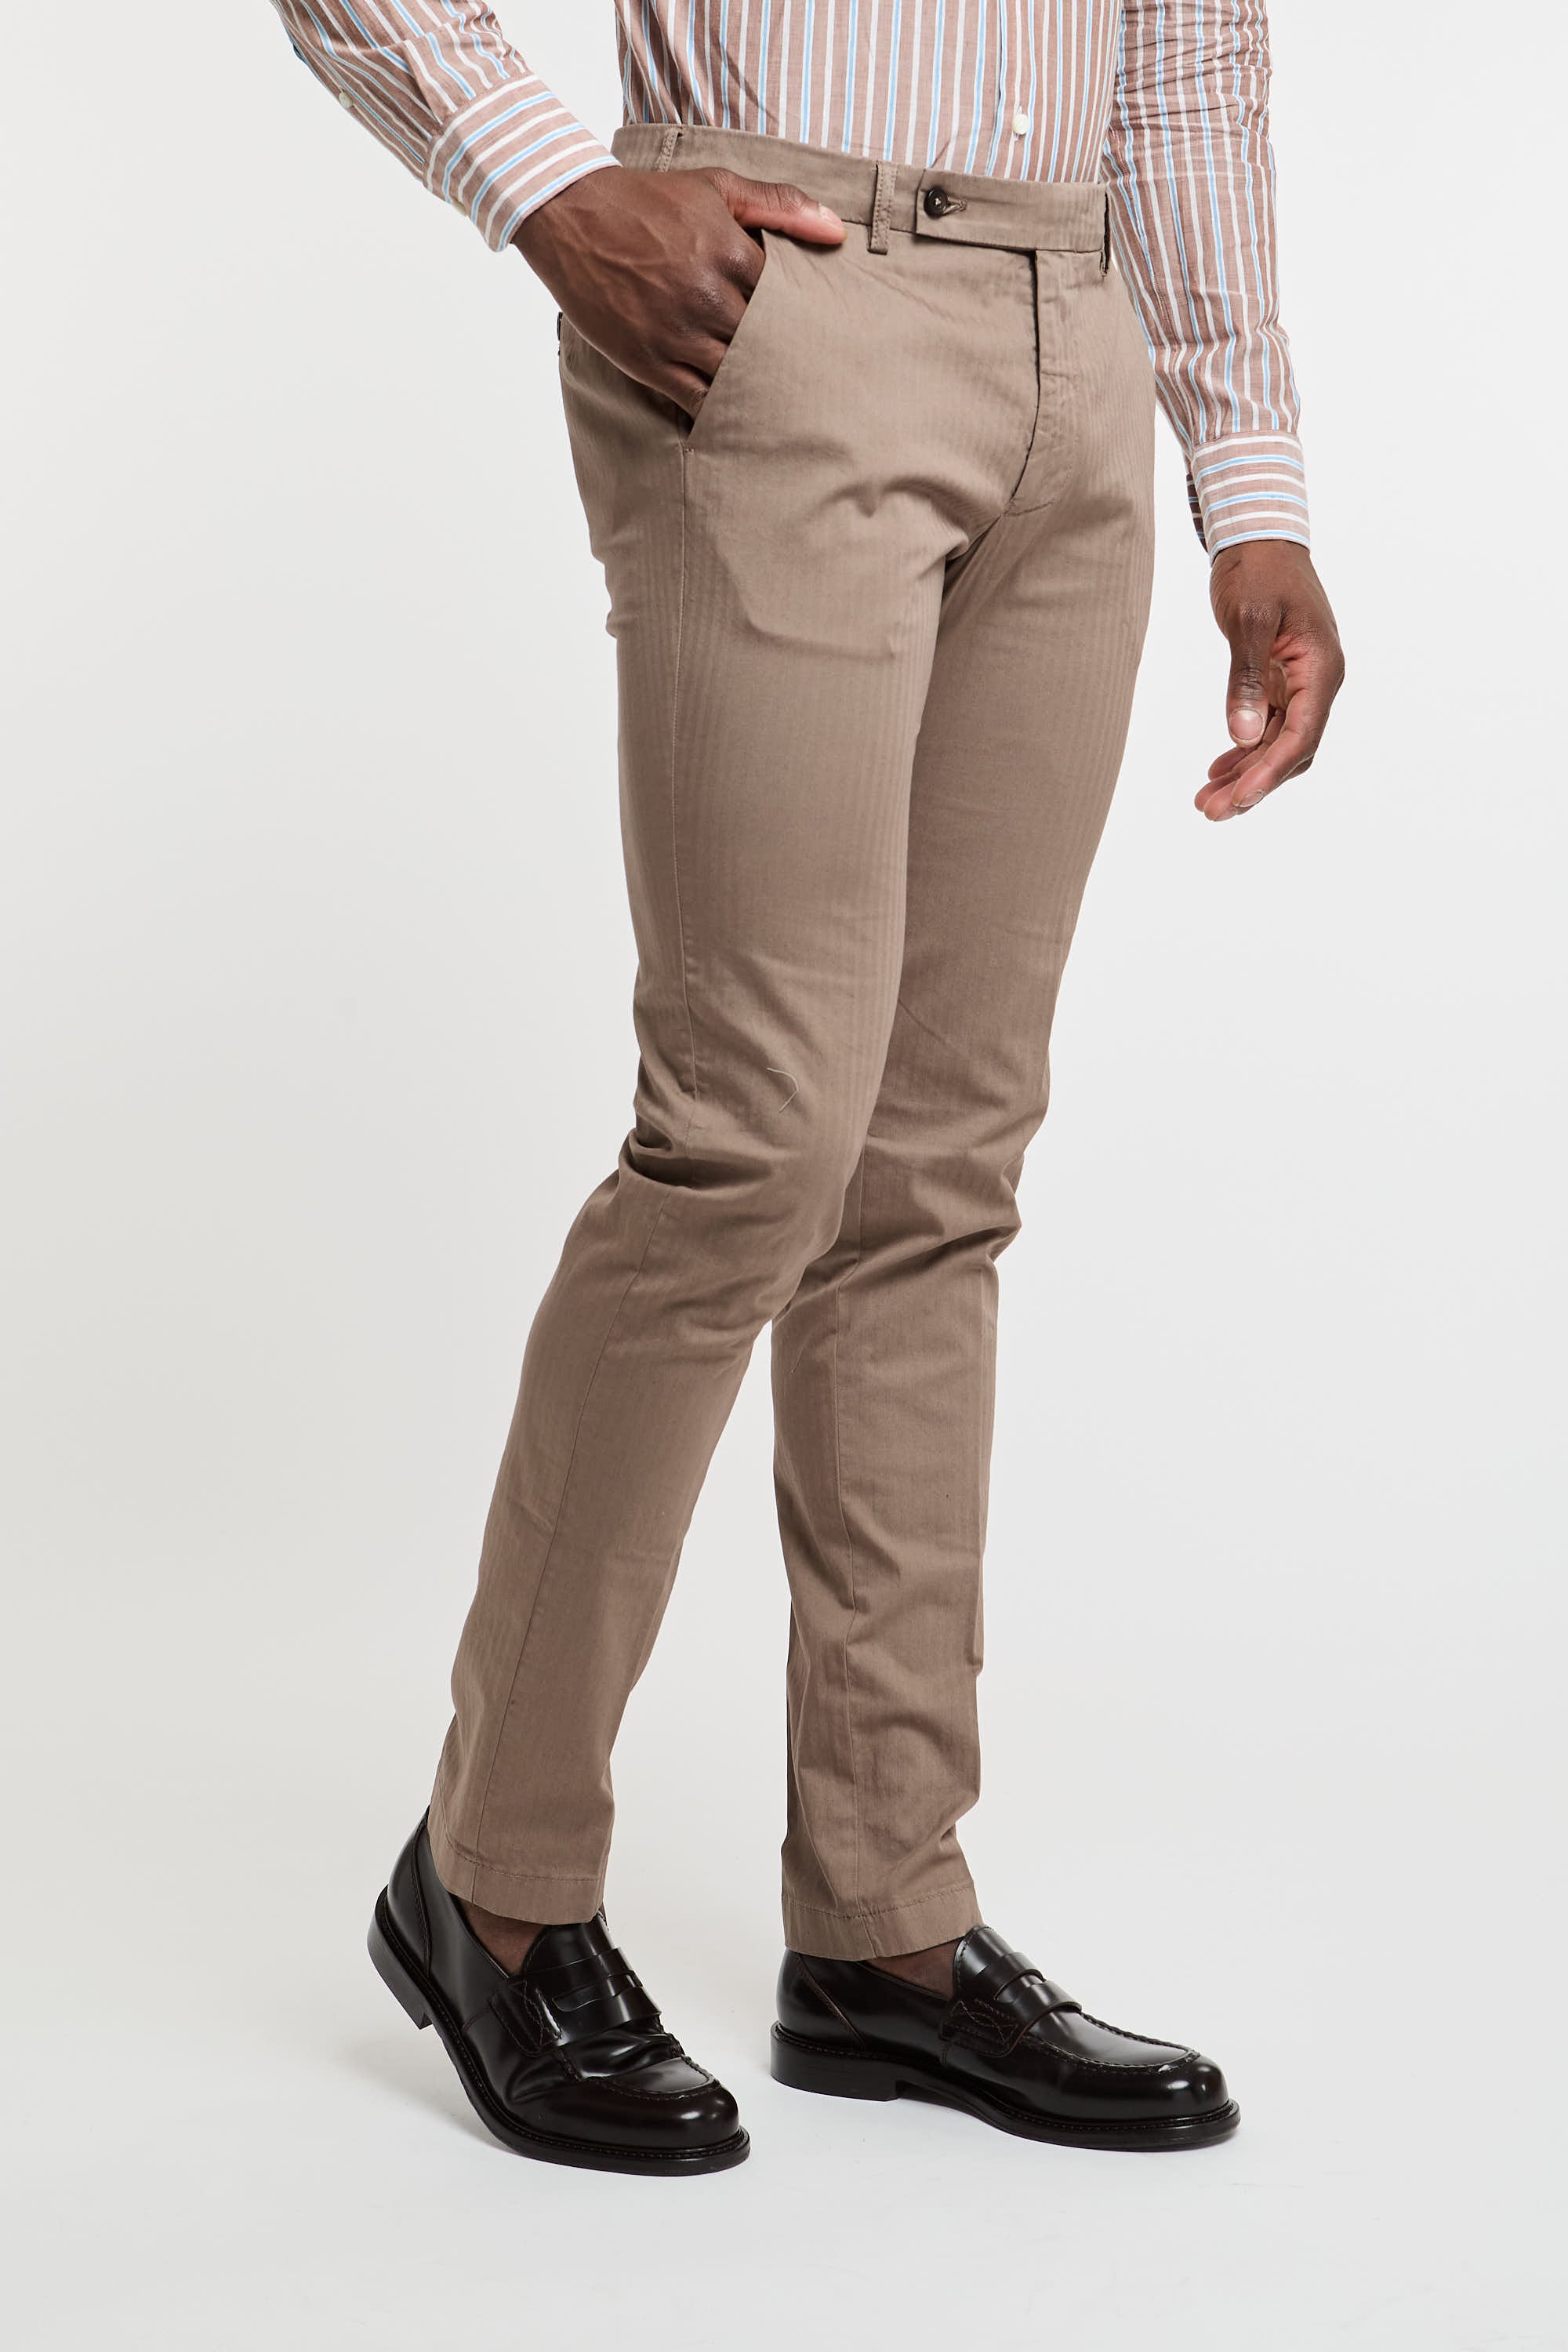 Berwich Rescato Brown Trousers-1